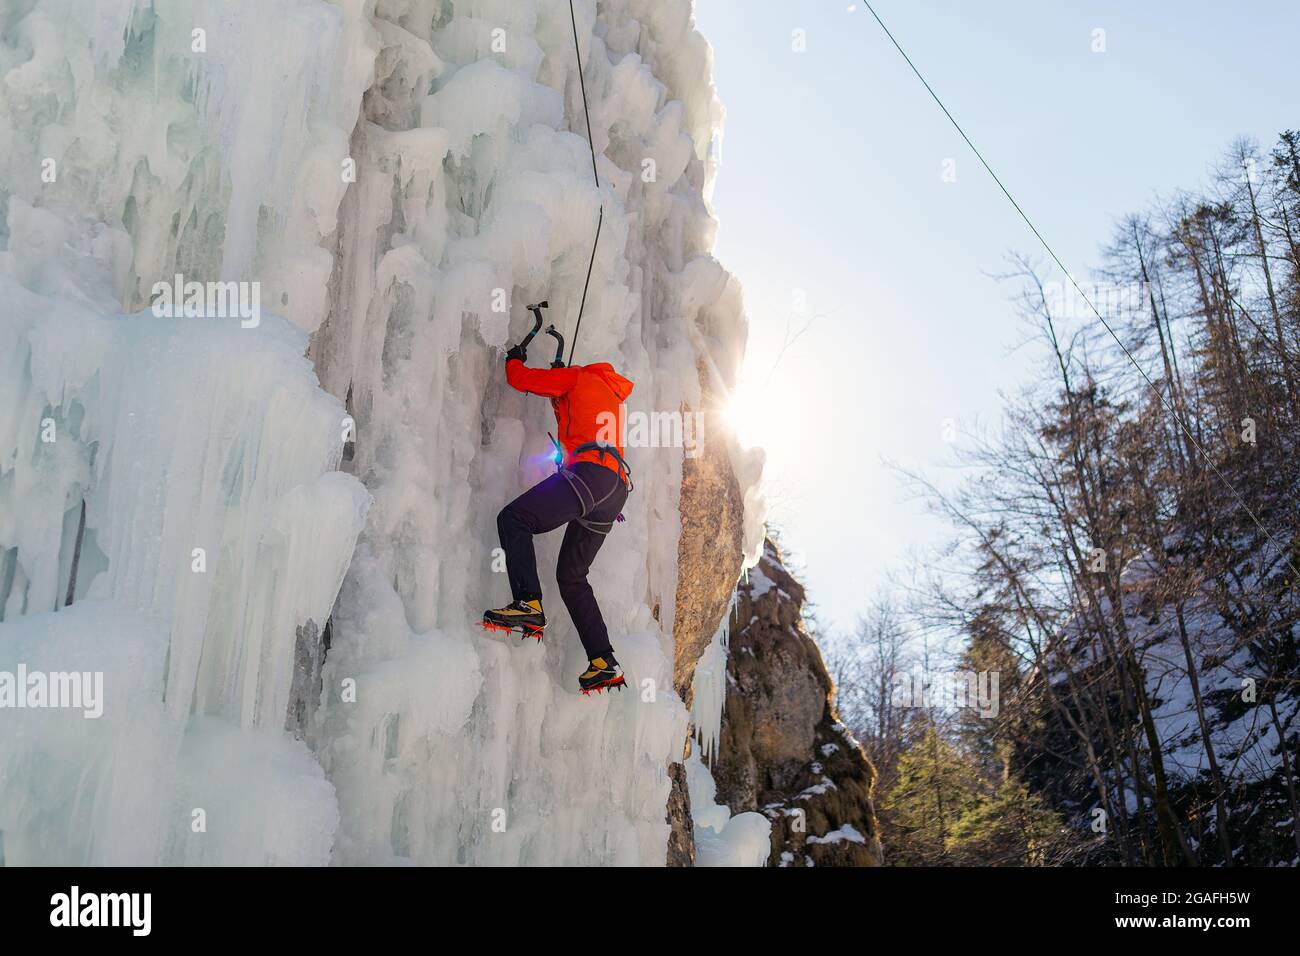 Luftaufnahme eines gefrorenen Eiswasserfalls, und der männliche Kletterer schreitet den Hang hinauf, während ein Seil, das an seinem Geschirr befestigt ist, ihn daran hindert, zu fallen Stockfoto